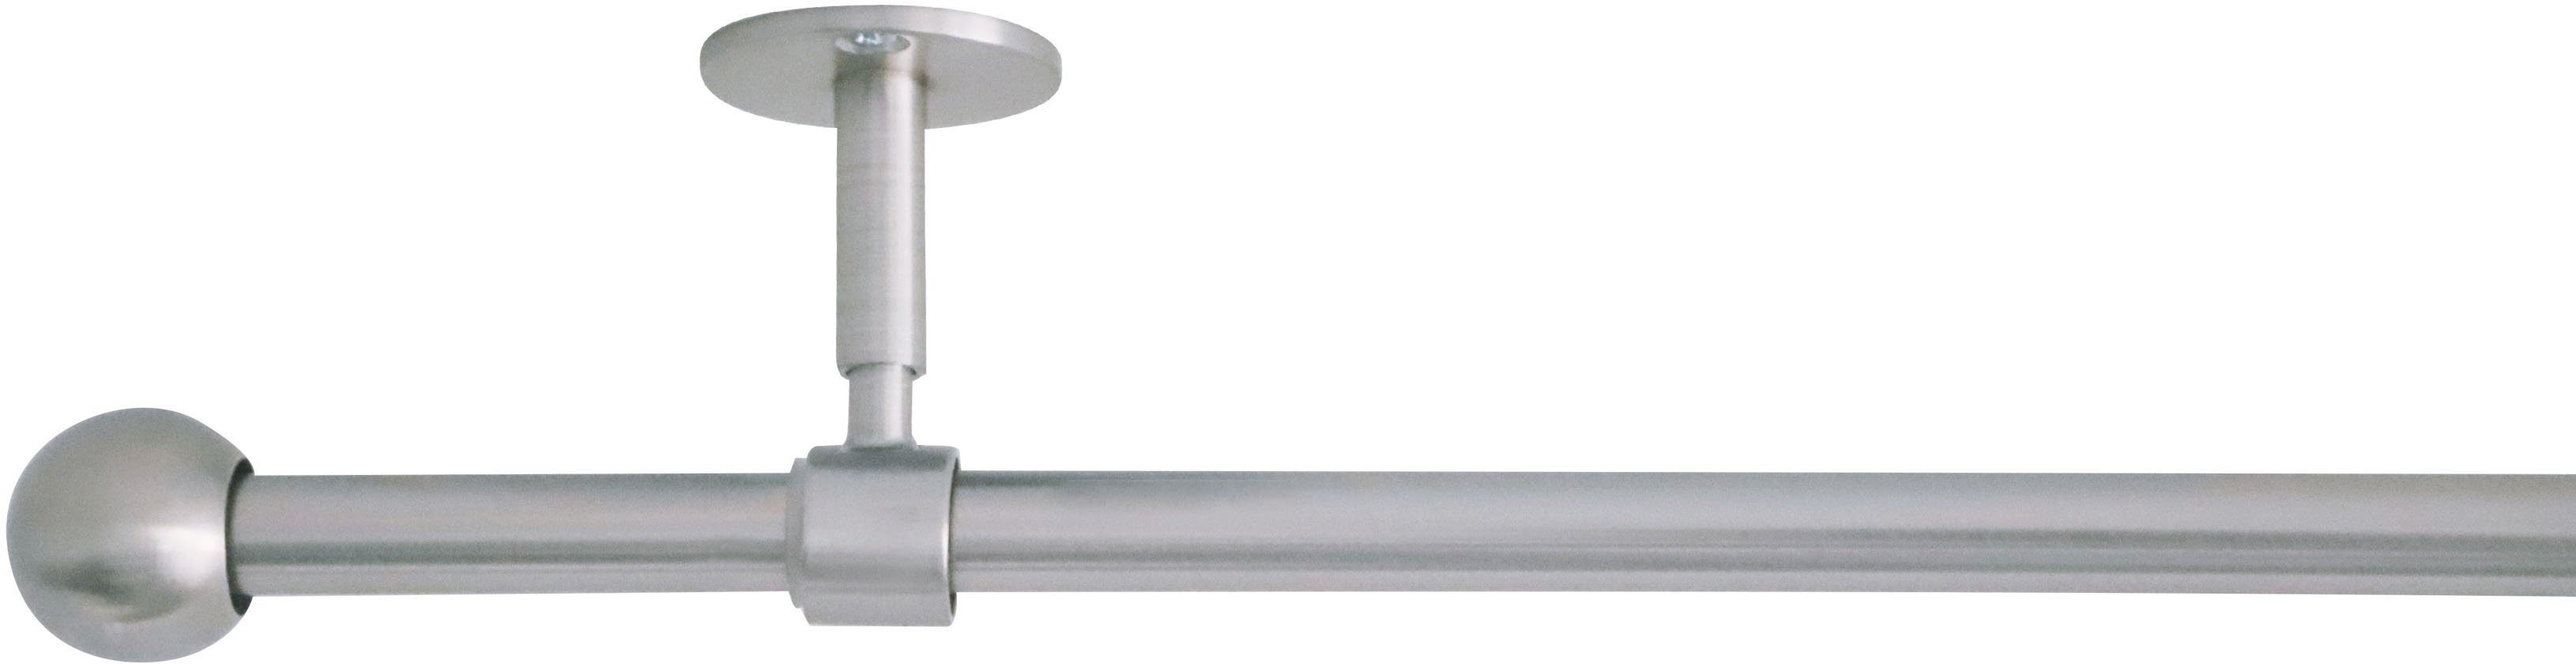 Gardinenstange 2in1, mydeco, Ø 19 mm, 1-läufig, ausziehbar, verschraubt,  Aluminium